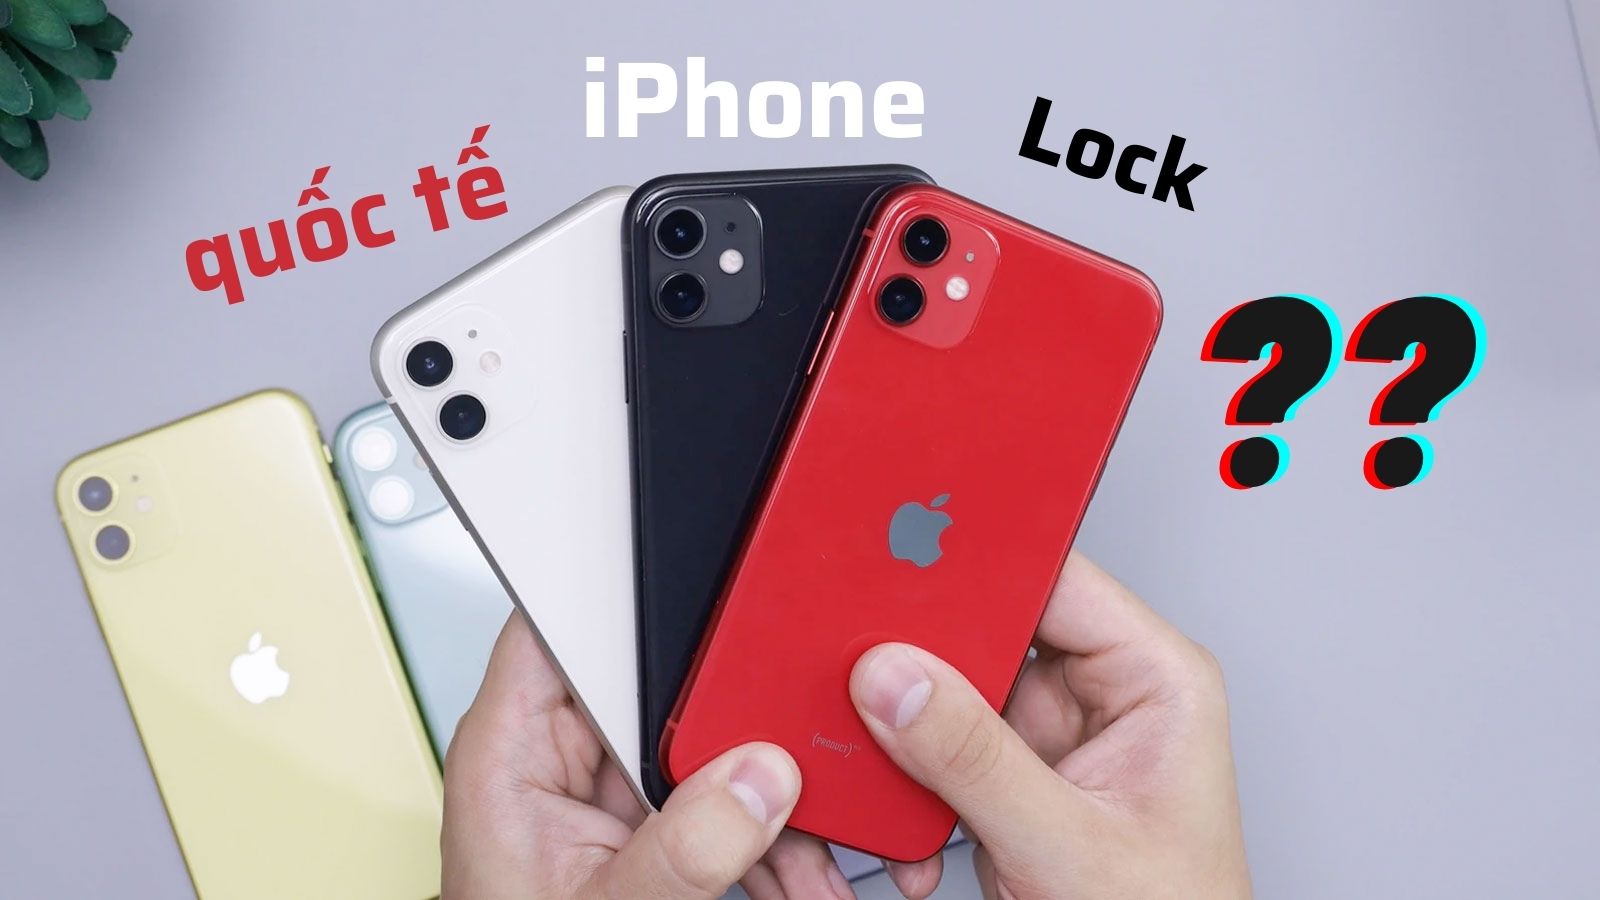 Hướng dẫn phân biệt iPhone Lock và iPhone quốc tế